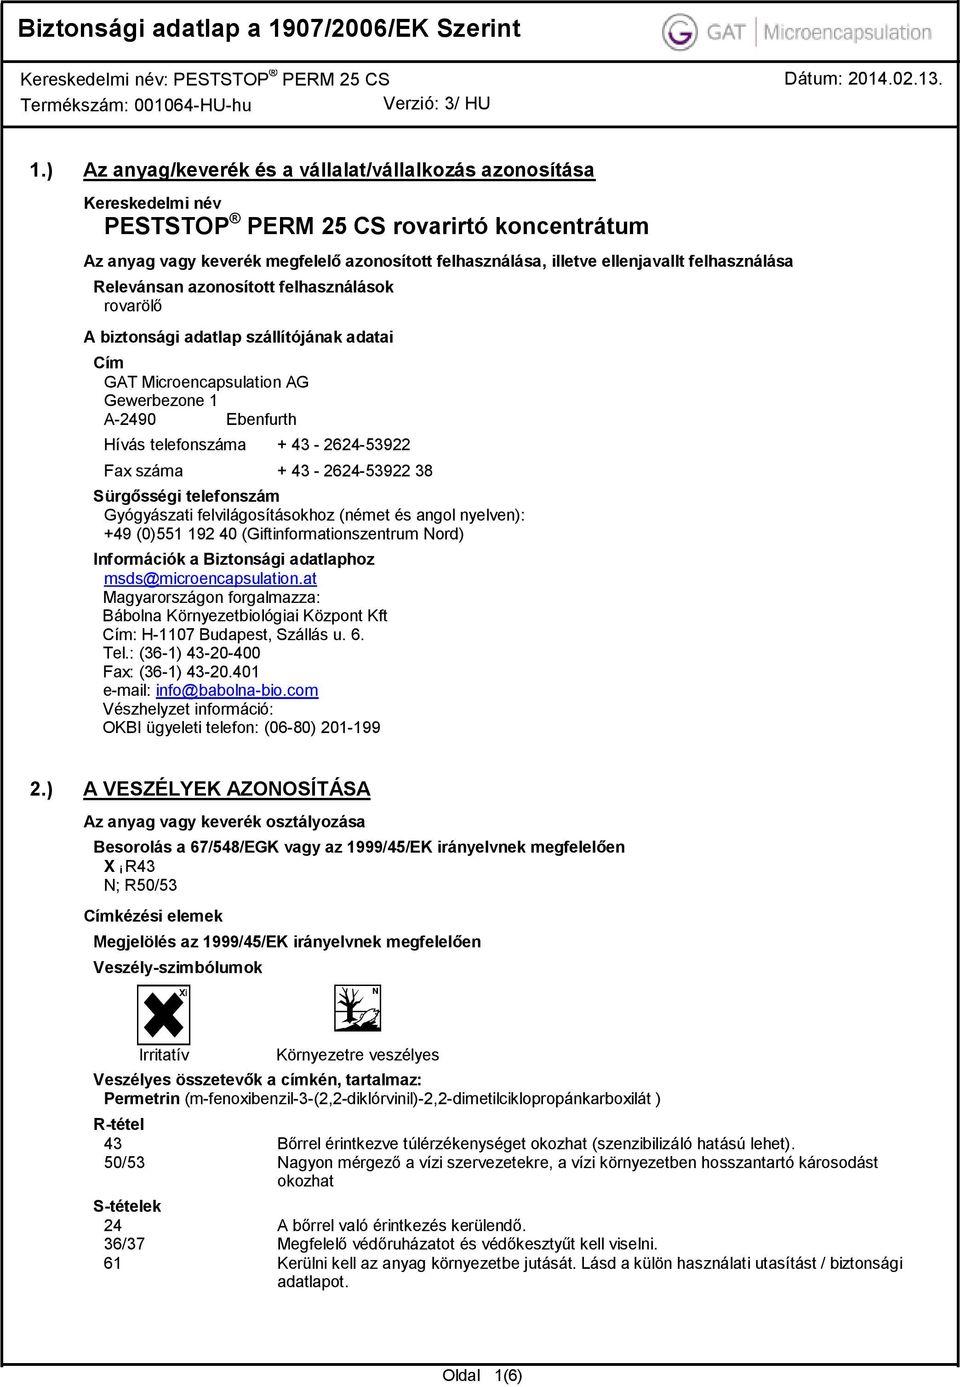 Fax száma + 43-2624-53922 38 Sürgősségi telefonszám Gyógyászati felvilágosításokhoz (német és angol nyelven): +49 (0)551 192 40 (Giftinformationszentrum Nord) Információk a Biztonsági adatlaphoz